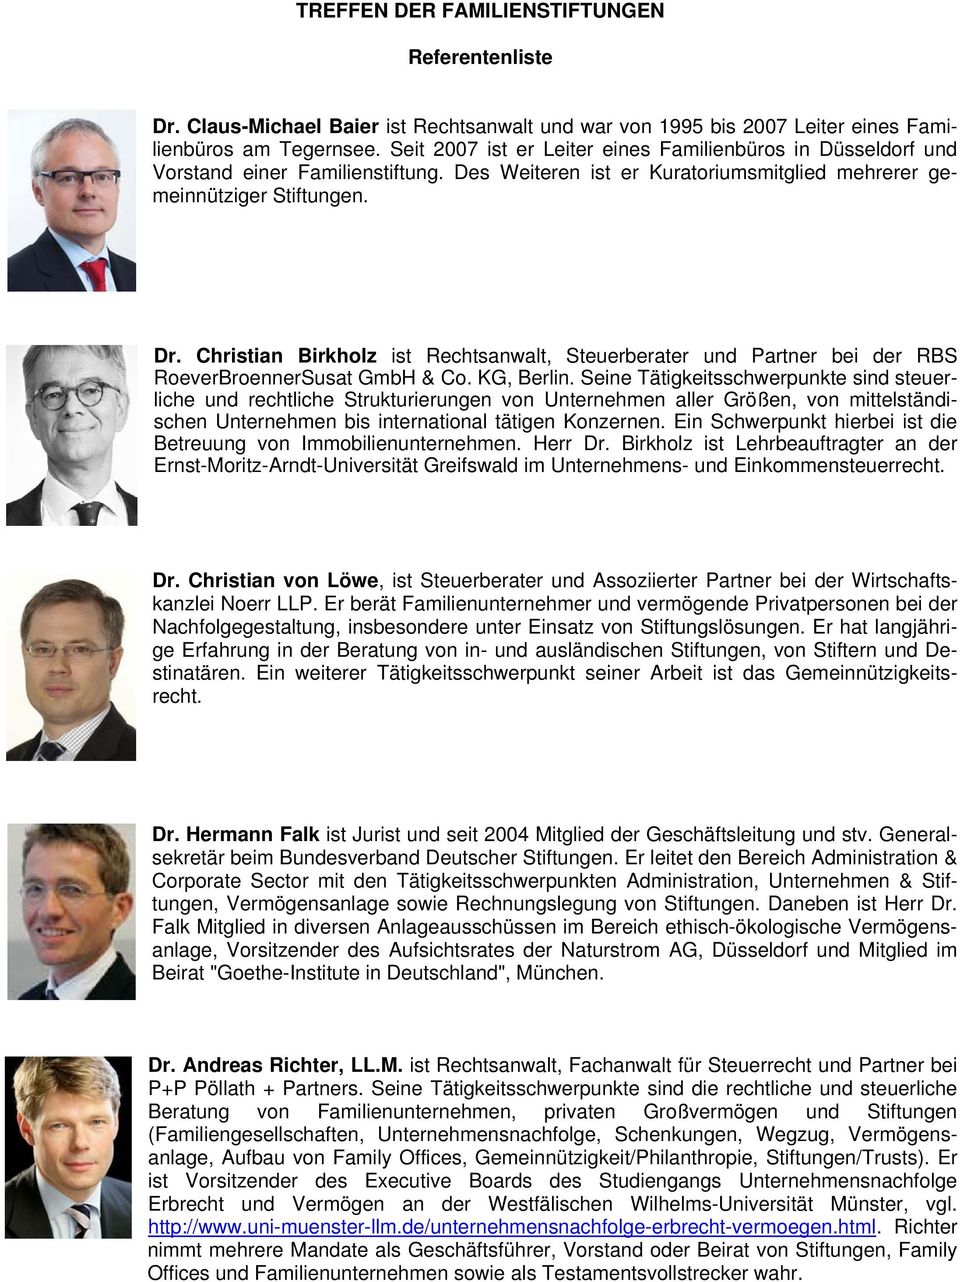 Christian Birkholz ist Rechtsanwalt, Steuerberater und Partner bei der RBS RoeverBroennerSusat GmbH & Co. KG, Berlin.